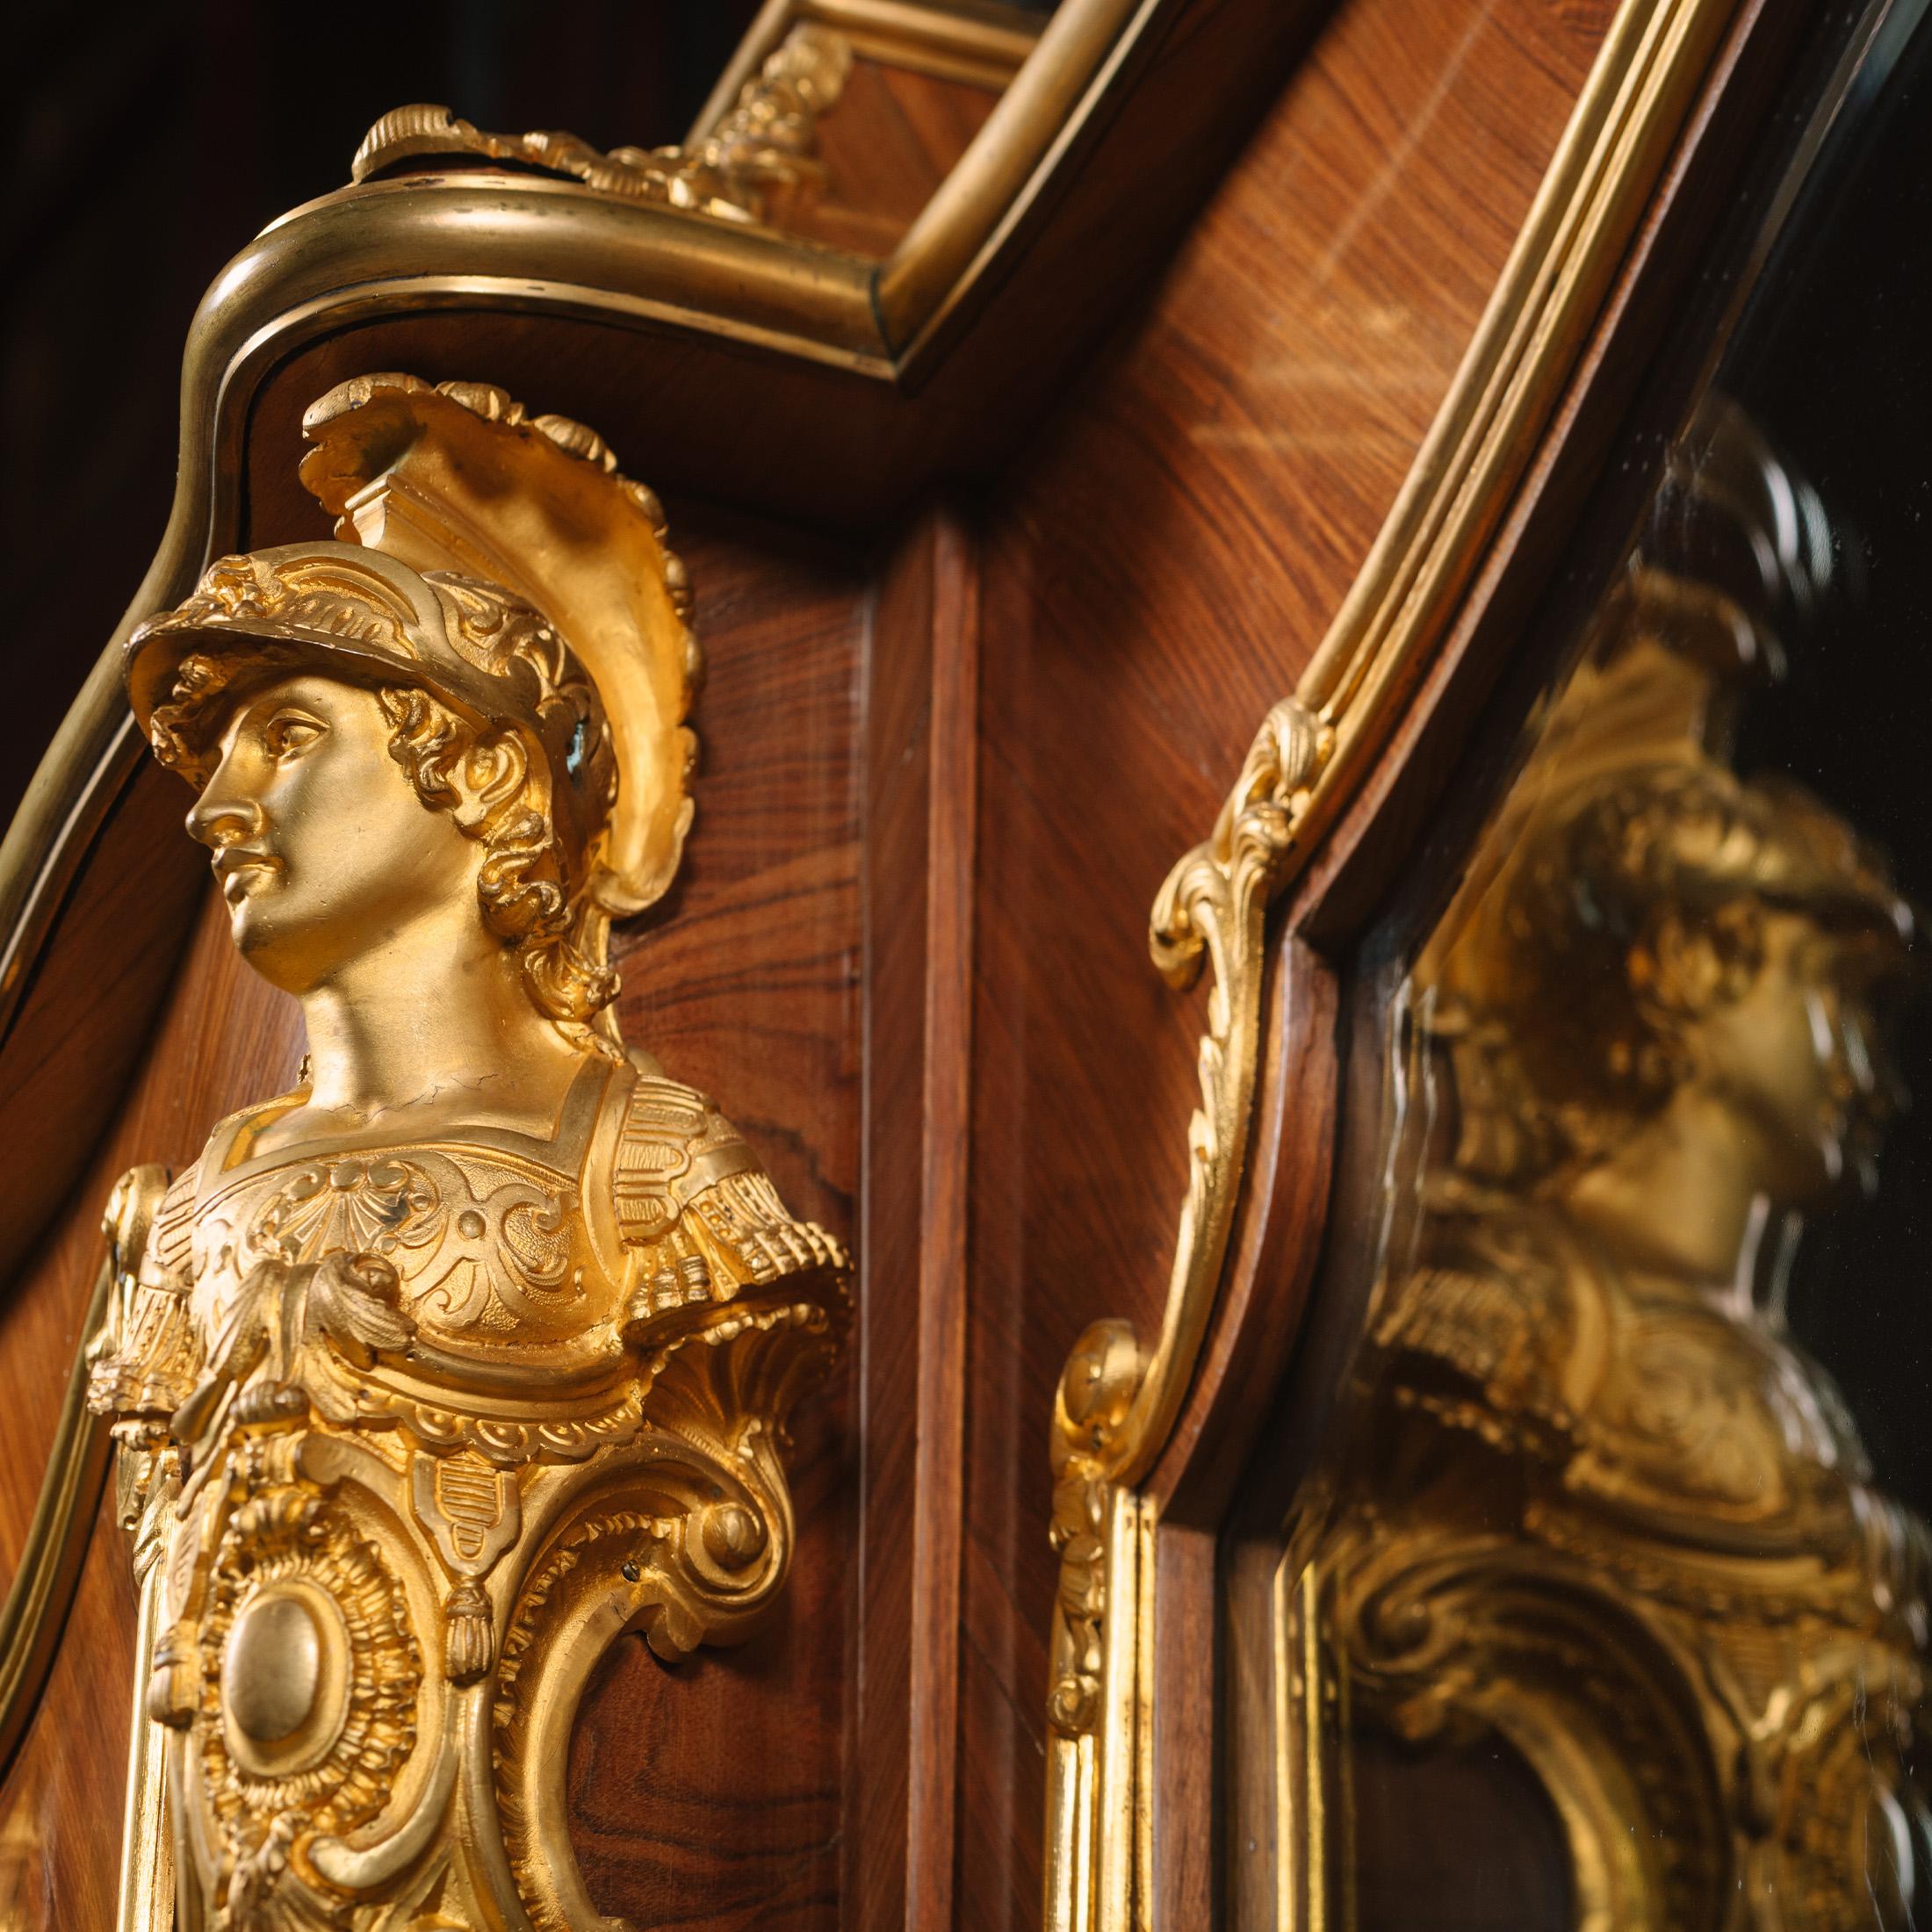 Eine vergoldete Bronzemontierung im Stil Ludwigs XV., die François Linke zugeschrieben wird.

Dieses Bücherregal ist reichlich mit Ormolu beschlagen, insbesondere die Soldatenbüsten an den Ecken, die als 